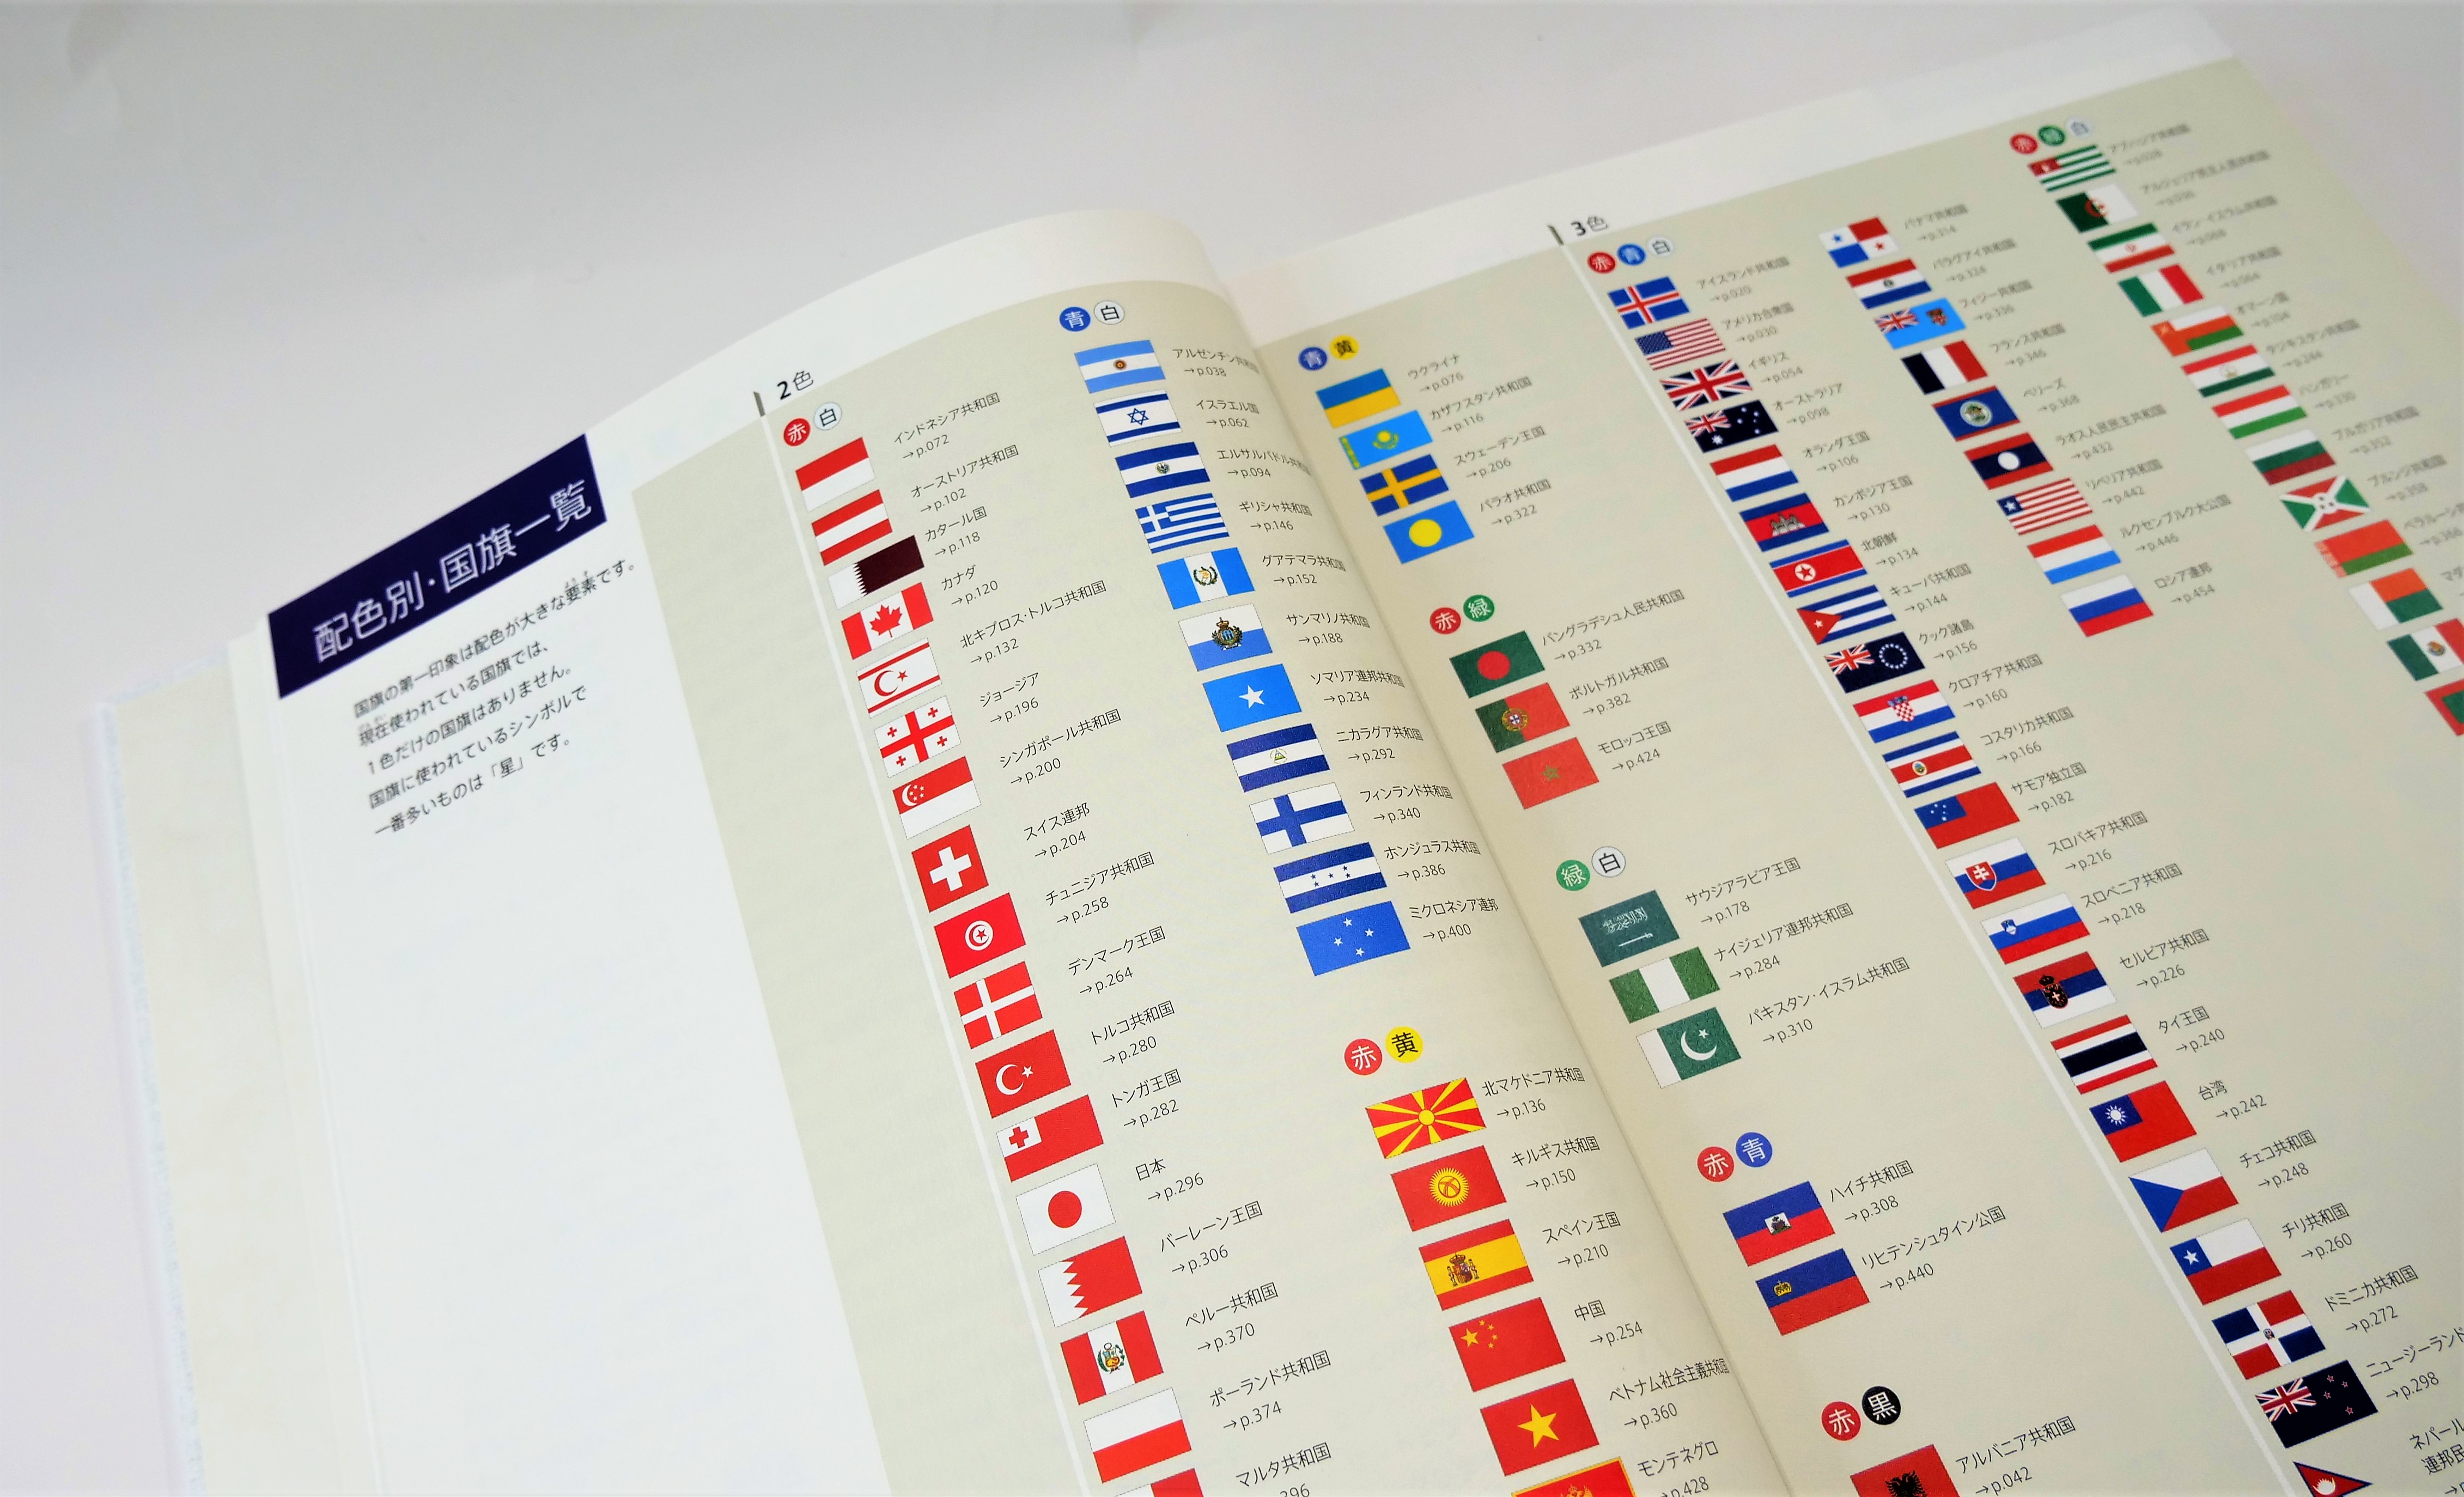 地理的な近さを越えた国のつながりが見える国旗大図鑑 256の国と海外領土の旗を収録 東京印書館 写真集 展覧会図録 絵本 その他印刷物の企画制作 Tokyo Inshokan Printing Co Ltd